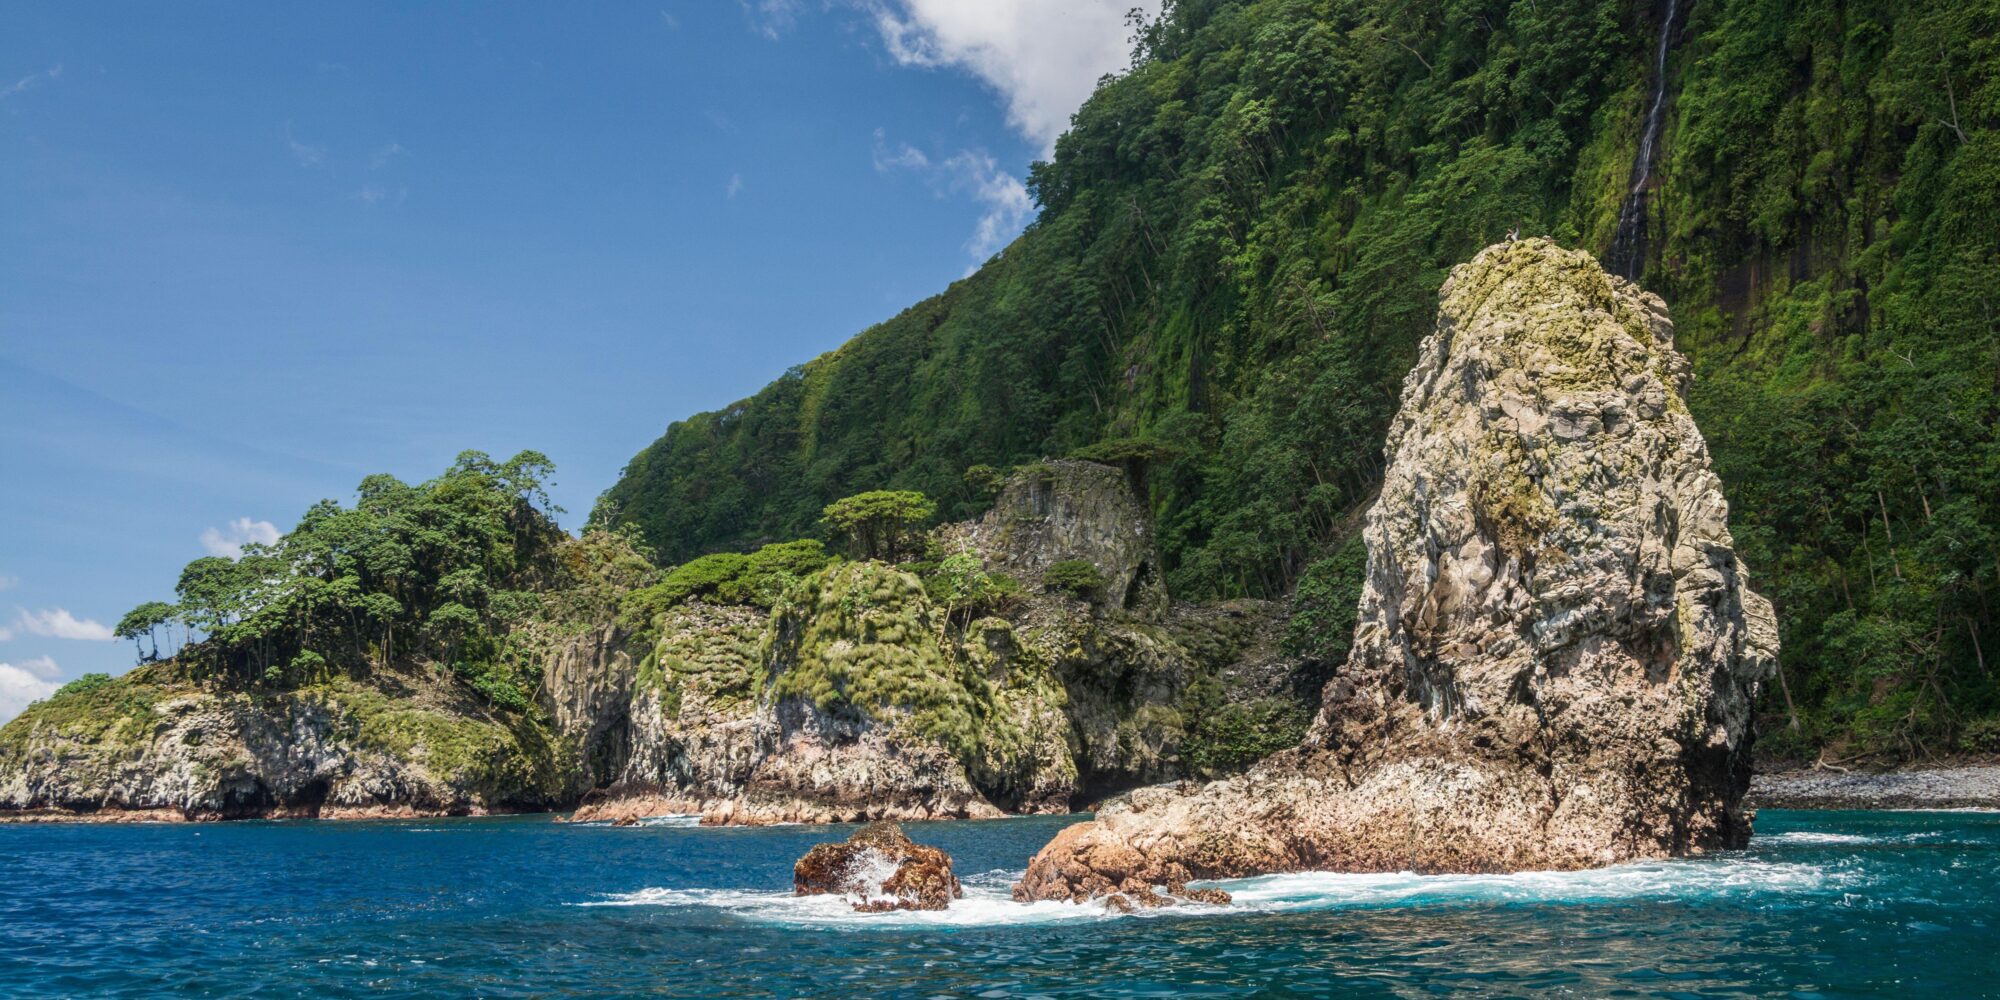 <p>El Área Marina Protegida (AMP) alrededor del Parque Nacional Isla Cocos de Costa Rica se amplió en 2021, ya que el país anunció planes en la COP26 para vincular sus AMP con las de Colombia, Ecuador y Panamá, aumentando la protección en uno de las áreas más ricas en biodiversidad en el mundo (Imagen: Nick Hawkins / Alamy)</p>